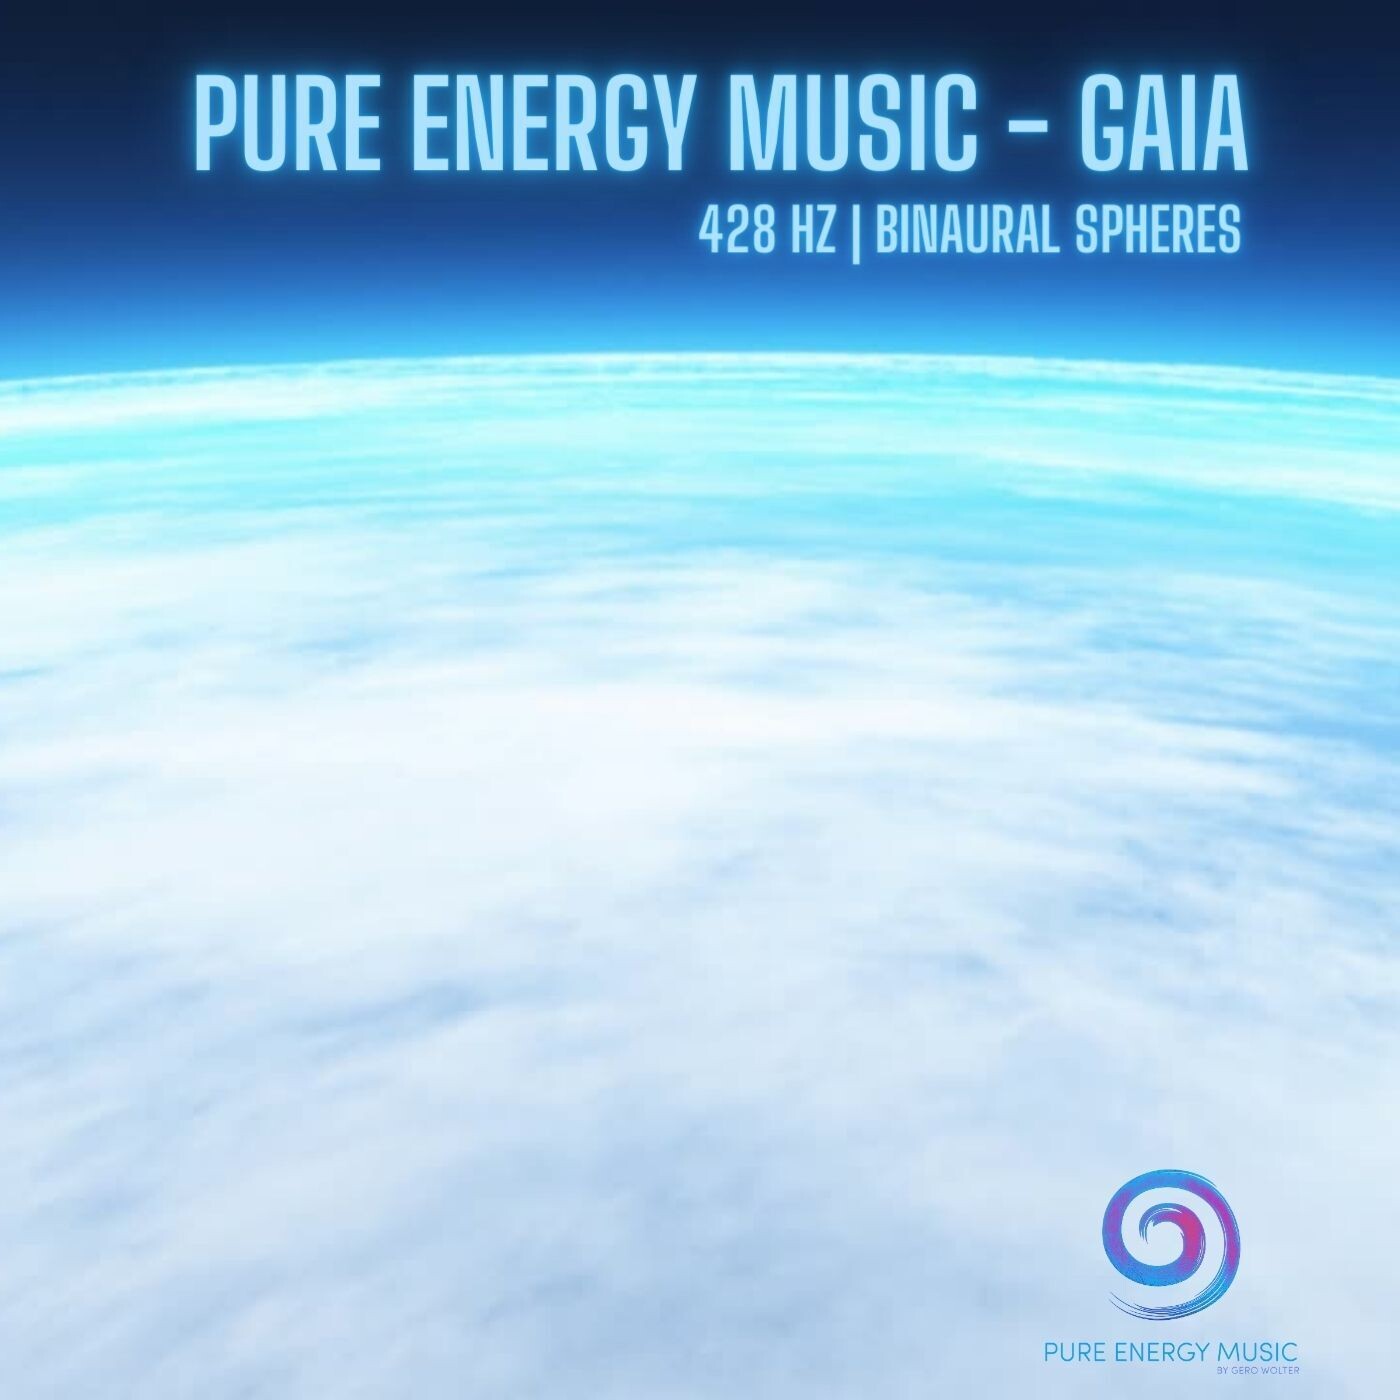 EP „Gaia“ MP3 | nach dem Kauf senden wir dir innerhalb 24 Stunden deinen persönlichen Download Link zu.